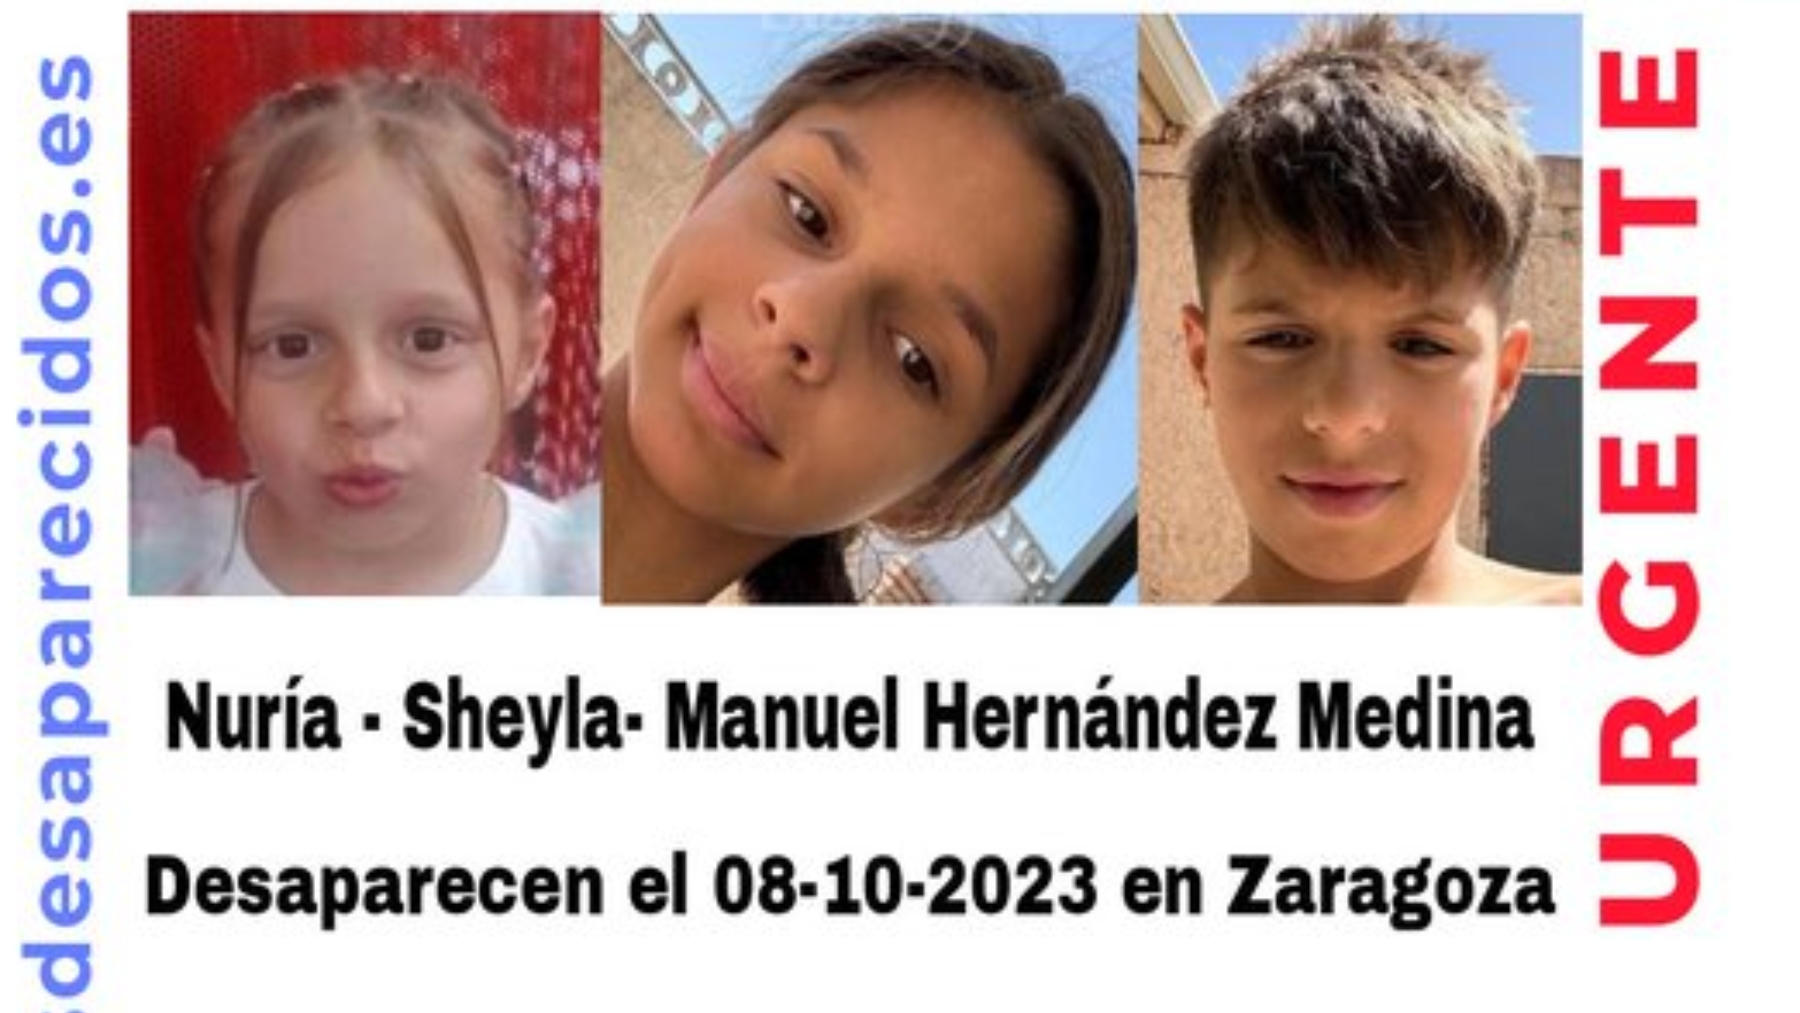 Los tres menores desaparecidos en Zaragoza.